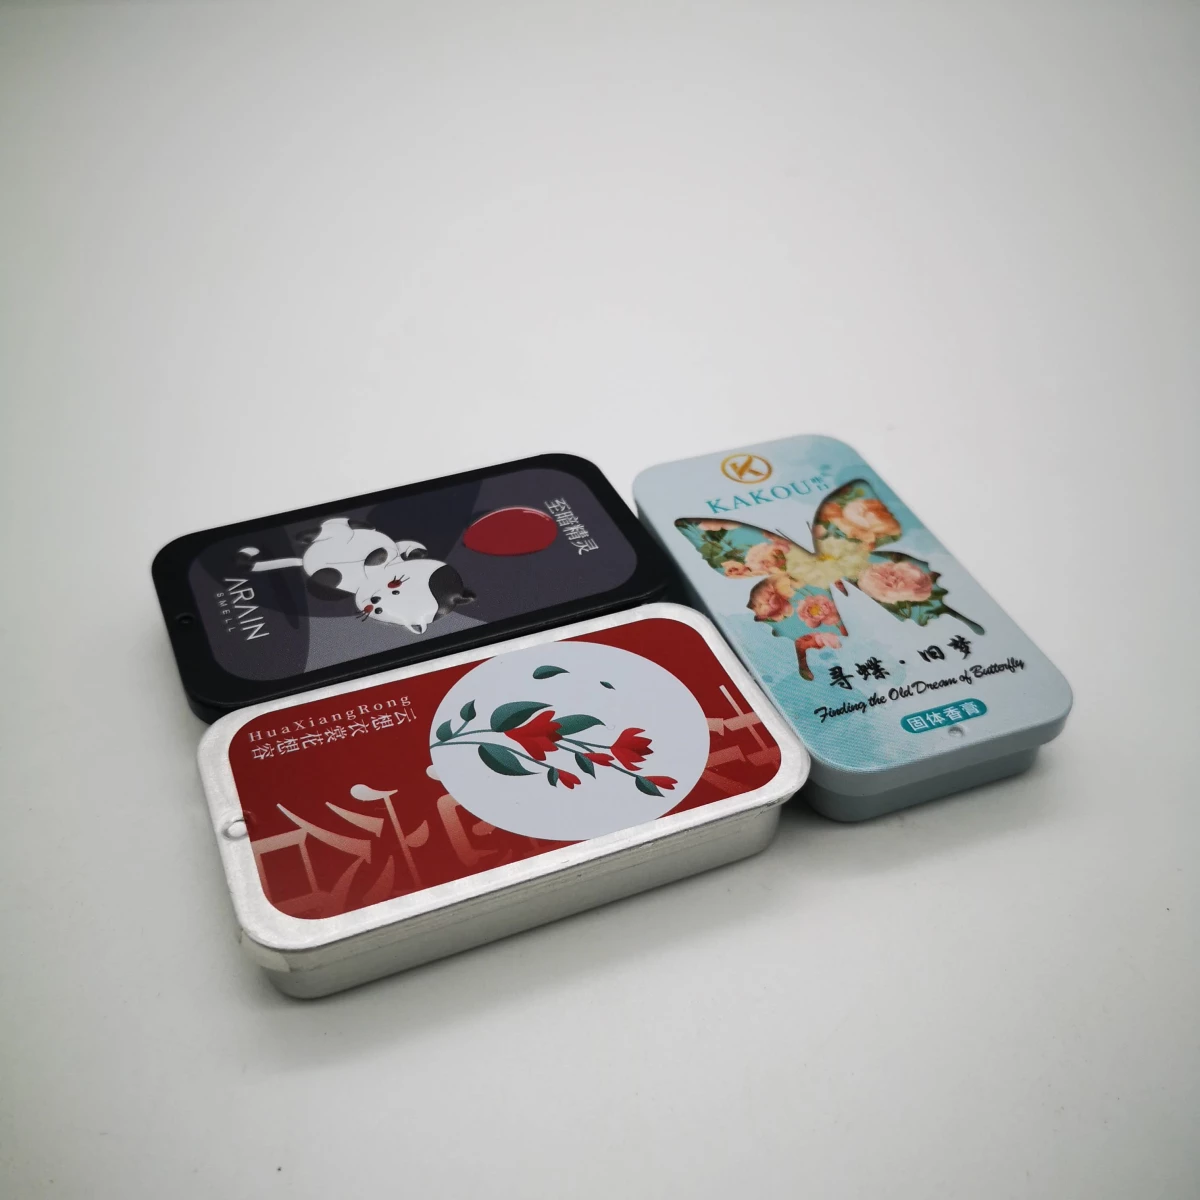 China RG057 hand cream slide tin box Manufacturers, Factory - Buy RG057 hand cream slide tin box at Good Price - Haohang